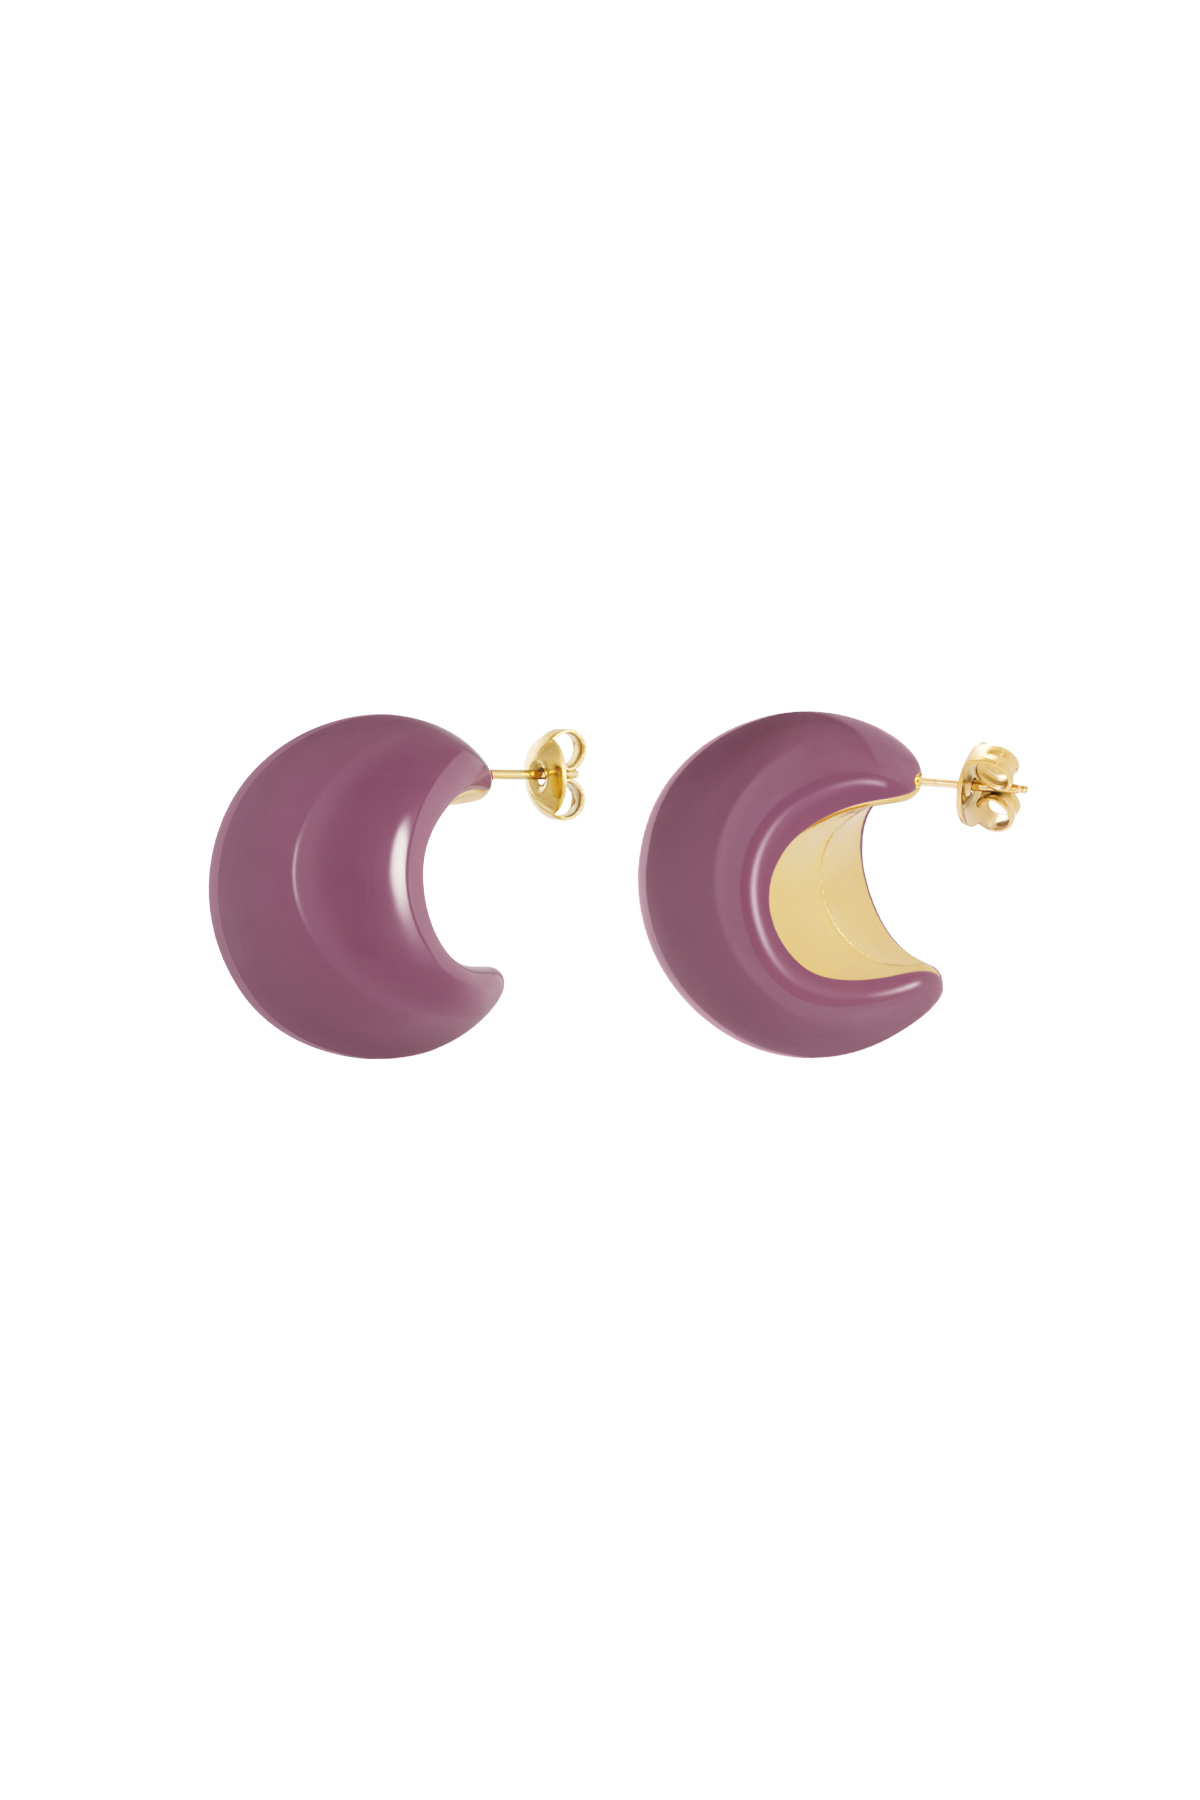 Kleurrijke halve maan oorbellen - paars 